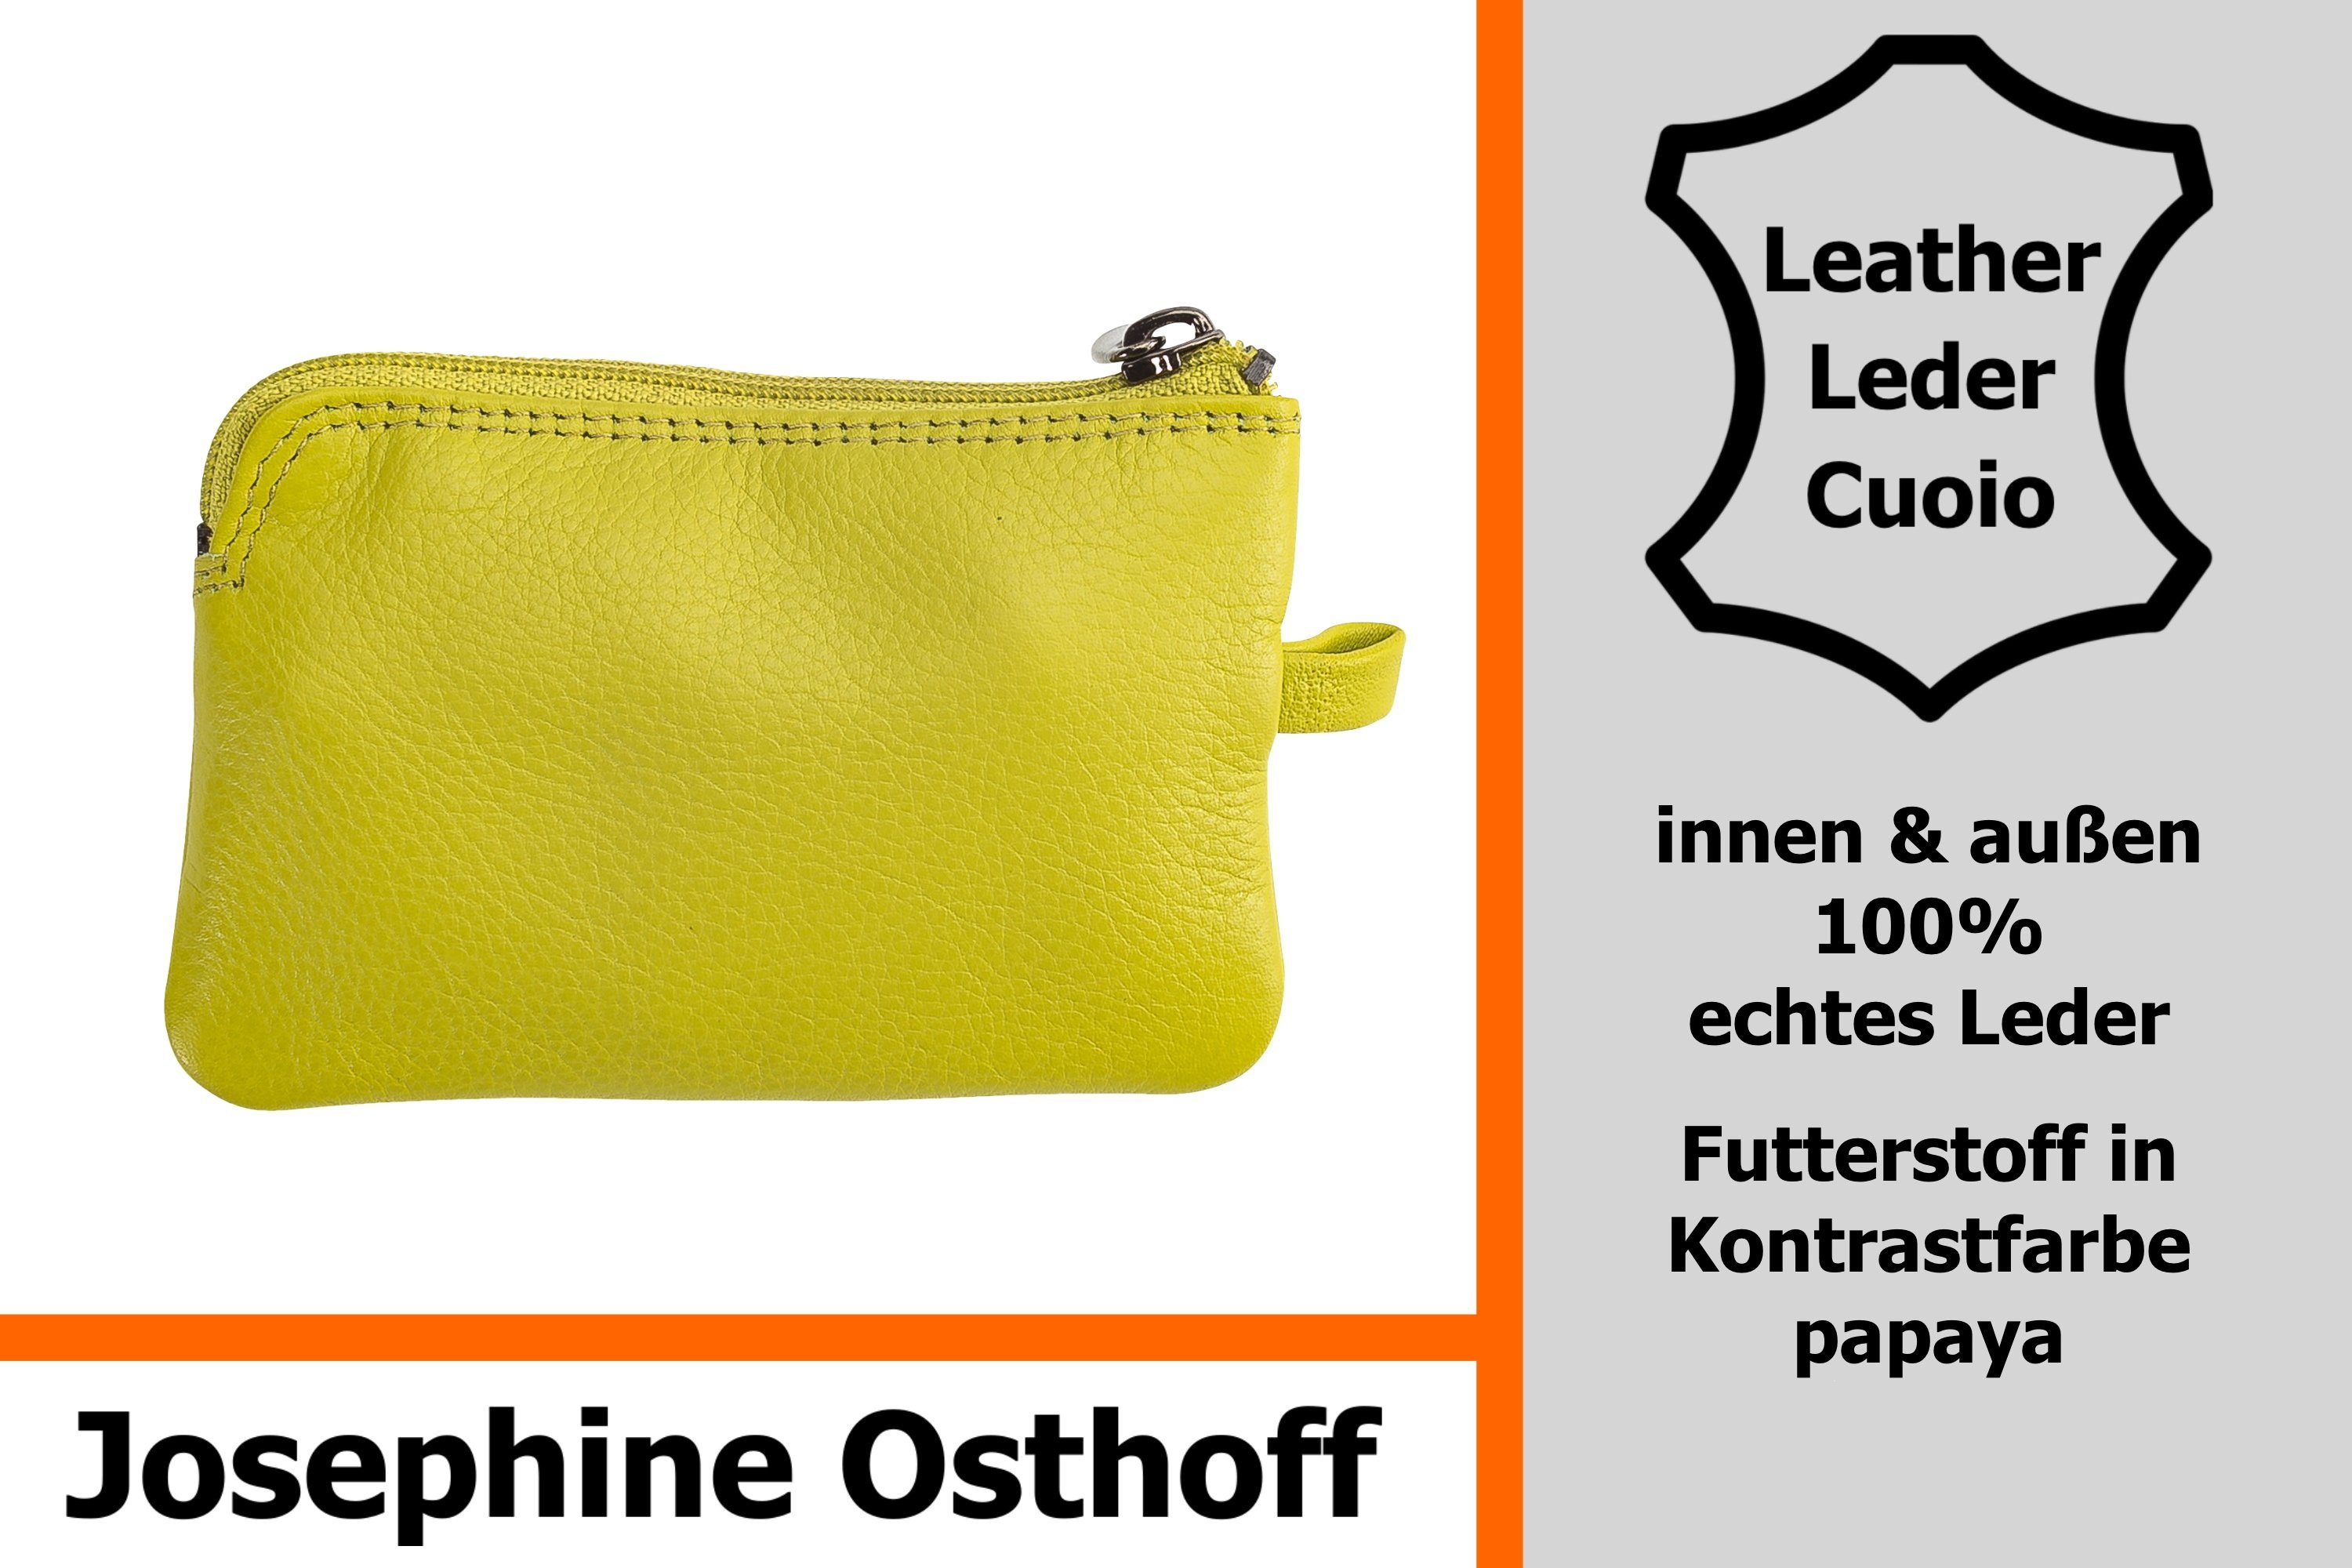 Nano limone klein Schlüsseltasche Schlüsseletui Osthoff Josephine